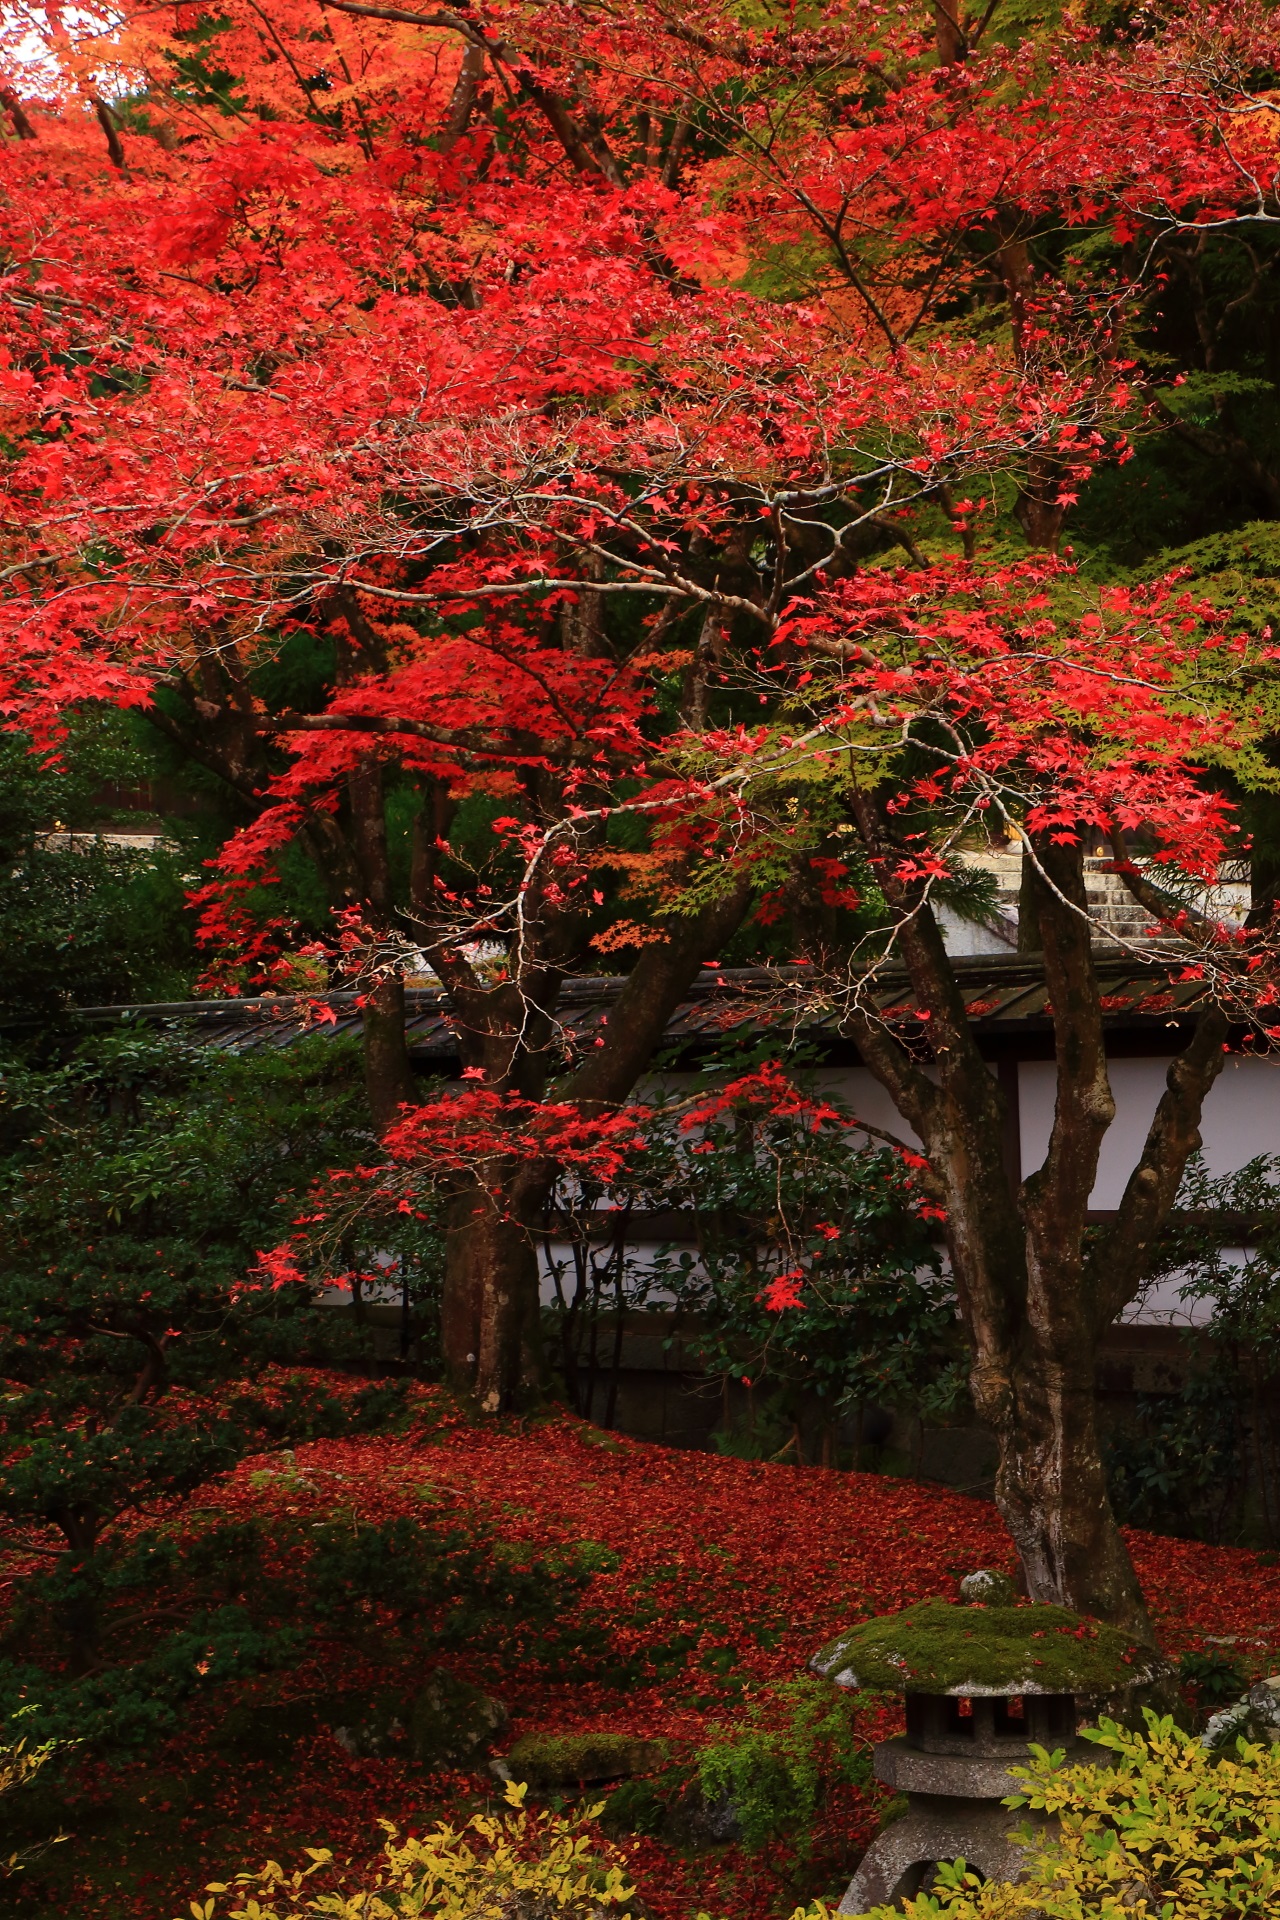 美しい散り紅葉と上も下も秋色の庭園